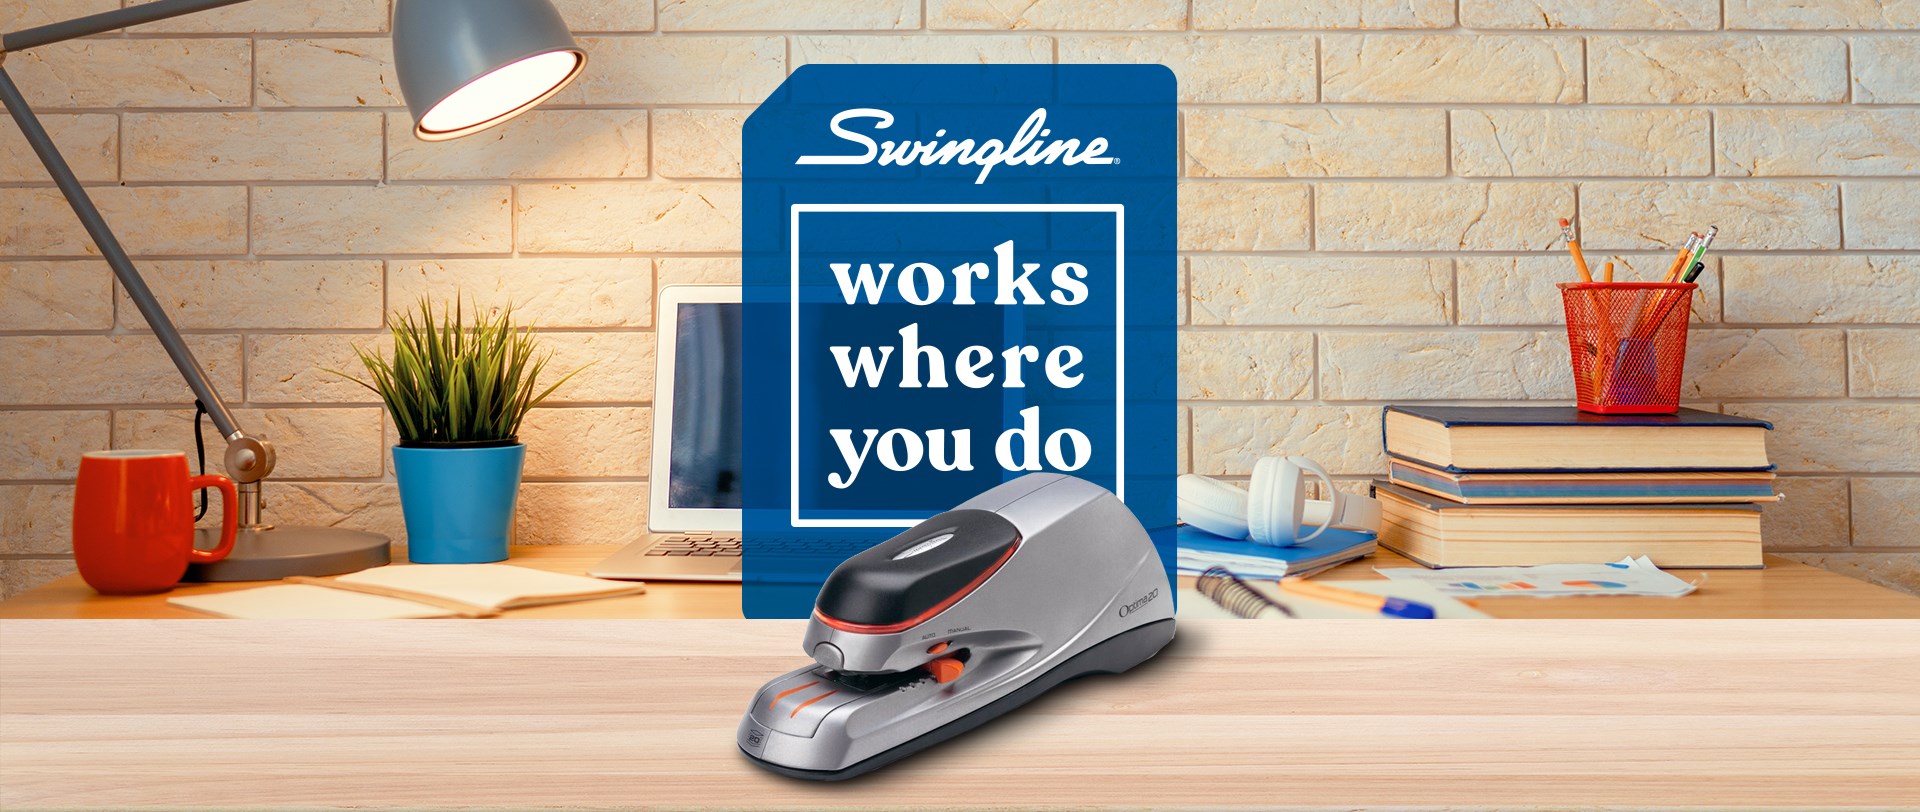 Swingline Optima® Grip Compact Electric Stapler featured on a desk